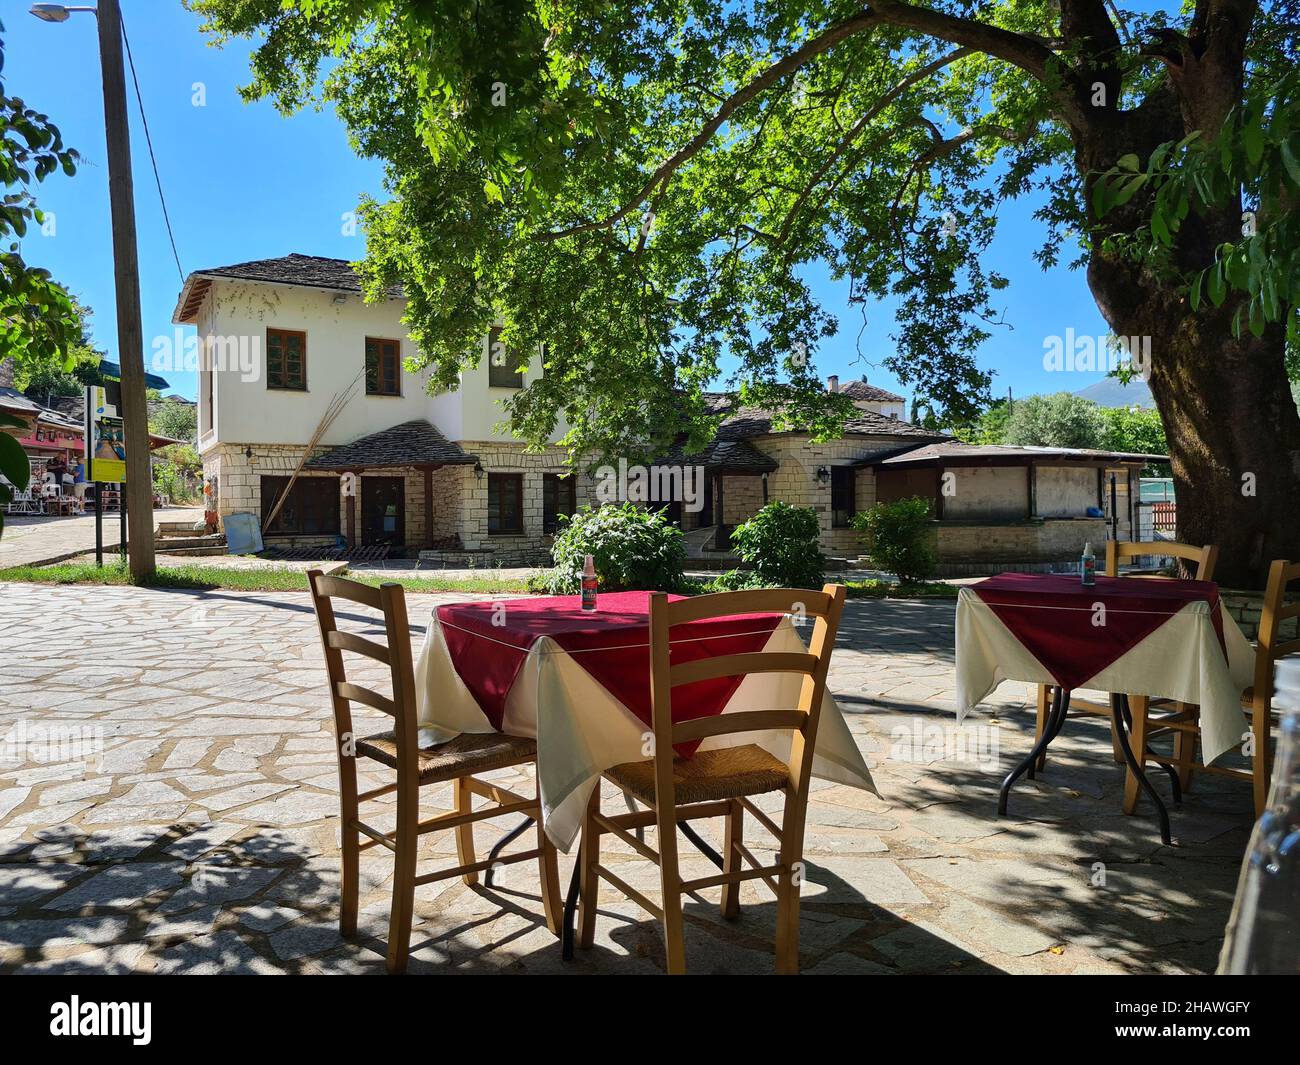 Ioannina, Grecia - 27 giugno 2021: Tavolo con spray per la disinfezione durante la pandemia corona nella zona giardino di un ristorante Foto Stock